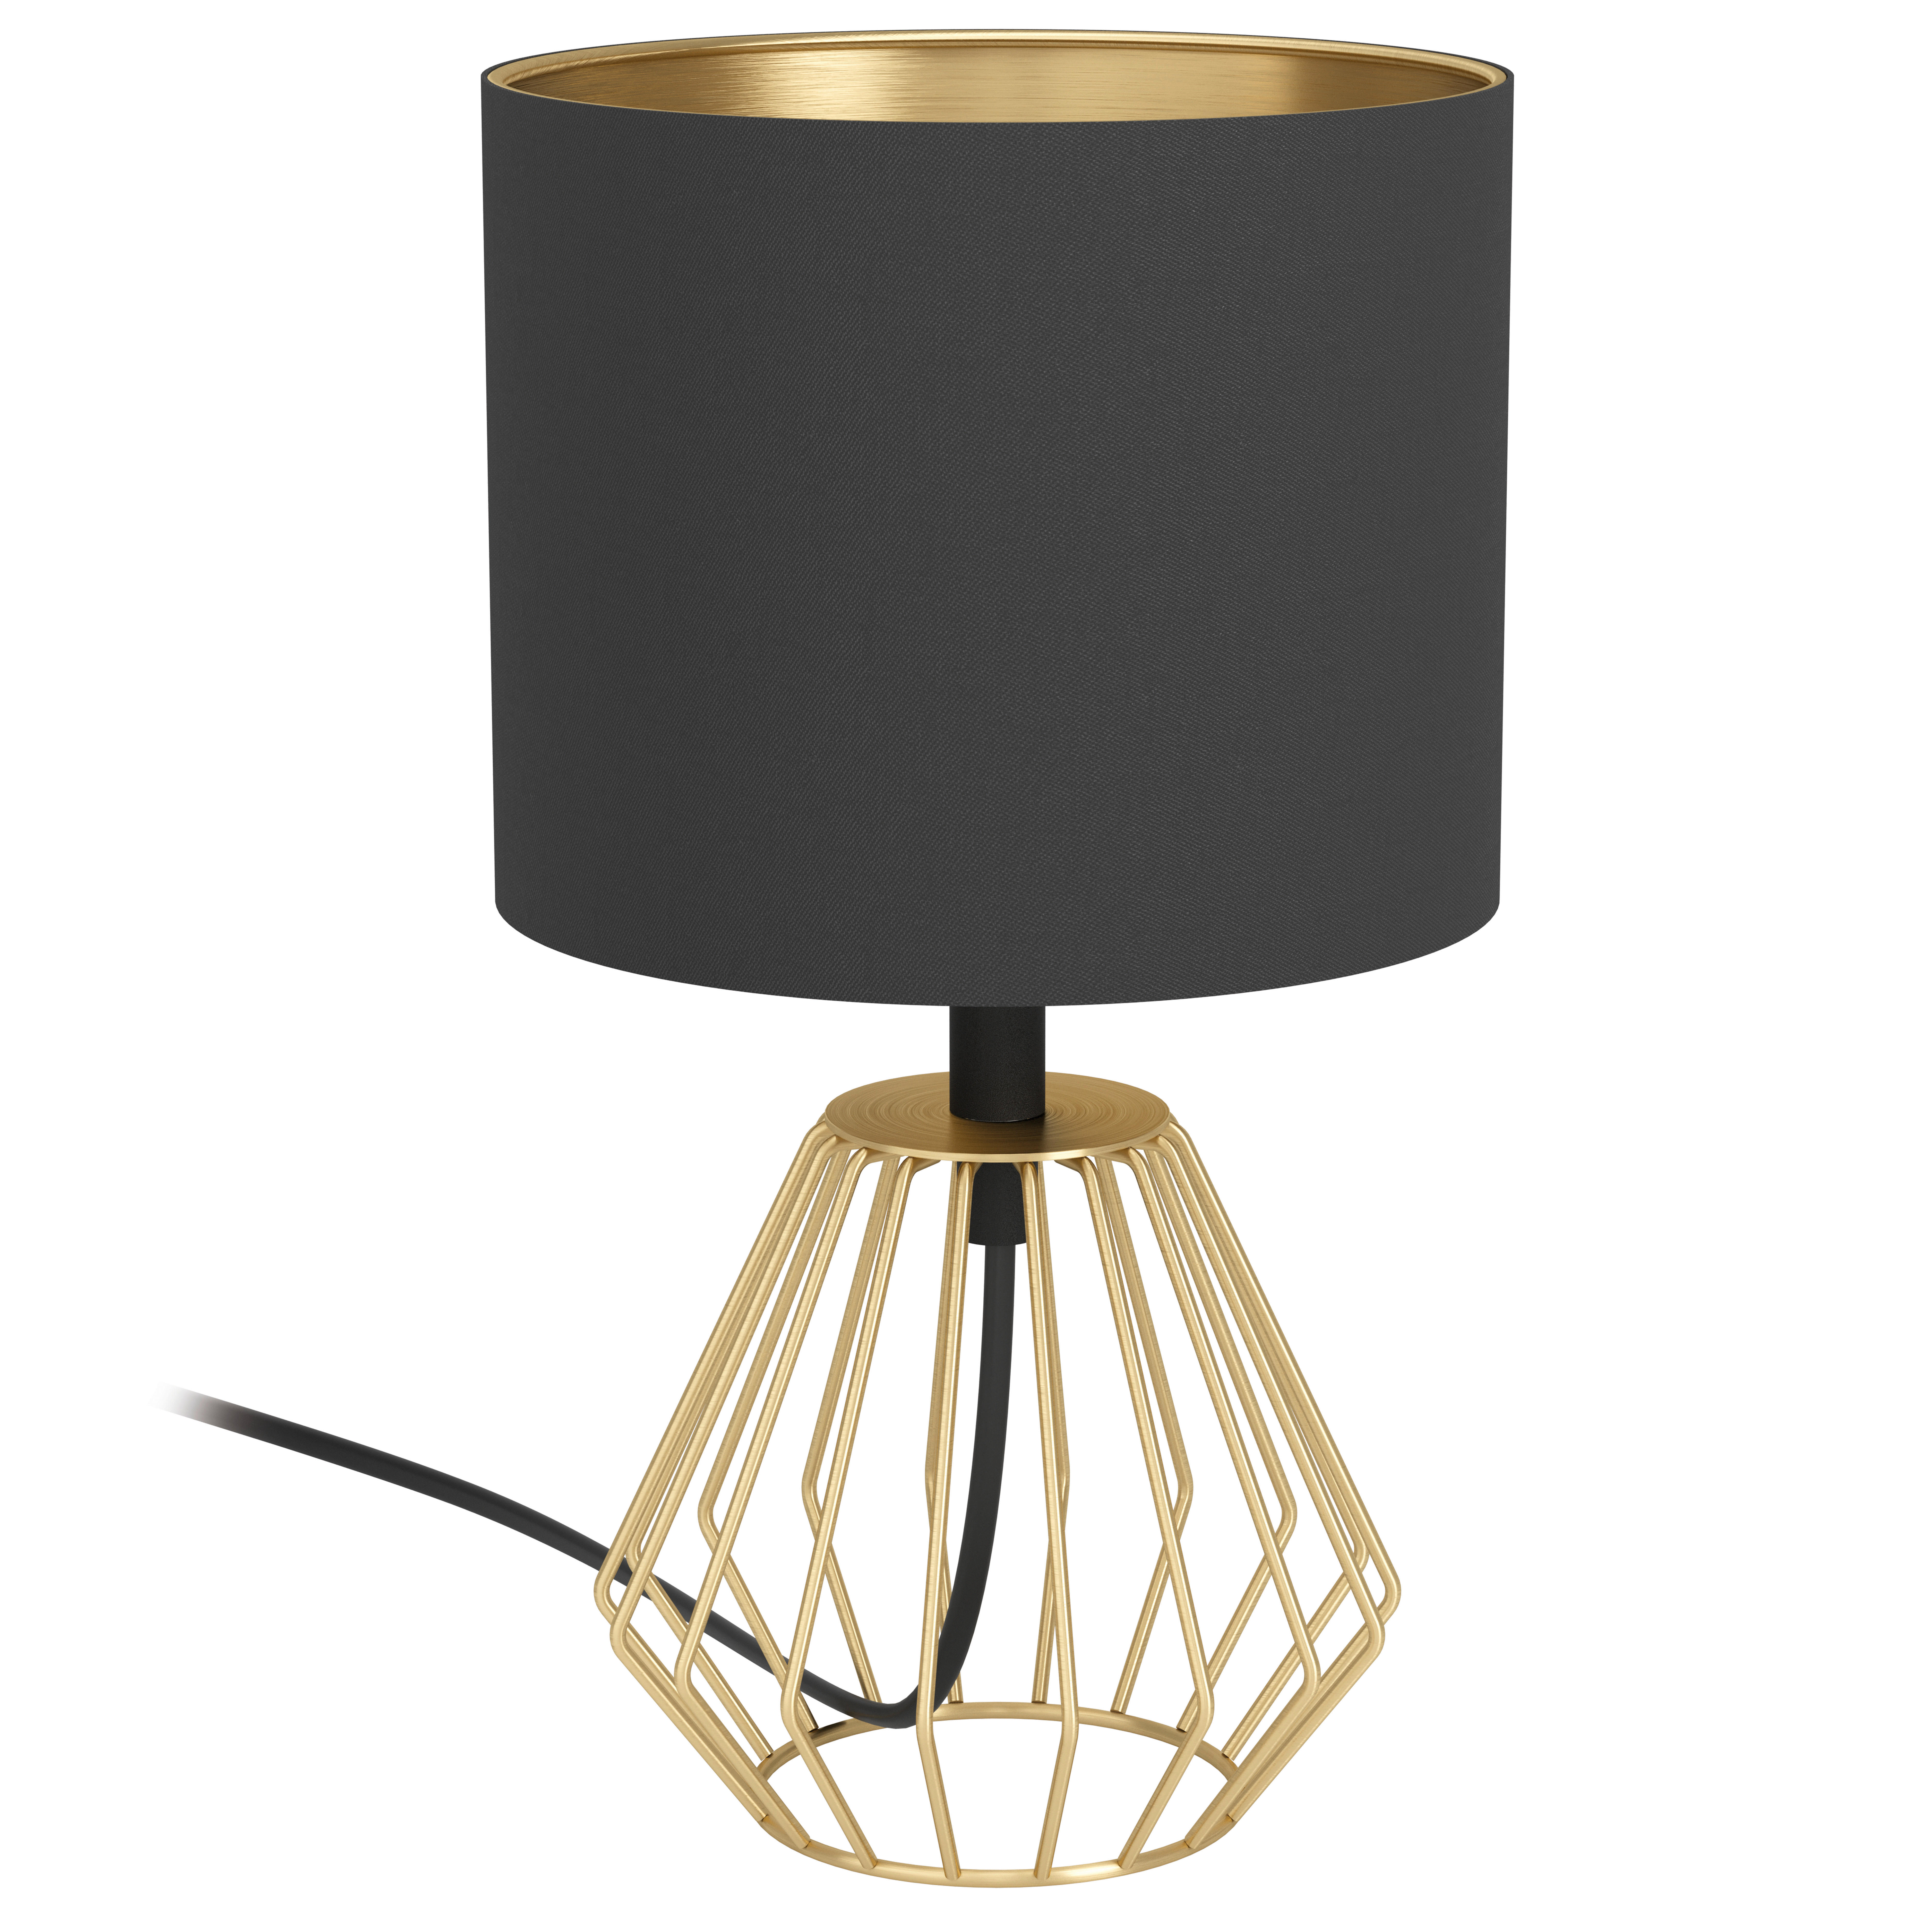 STOLNÁ LAMPA, E27, 16,5/31 cm  - čierna/zlatá, Trend, kov/textil (16,5/31cm) - Marama